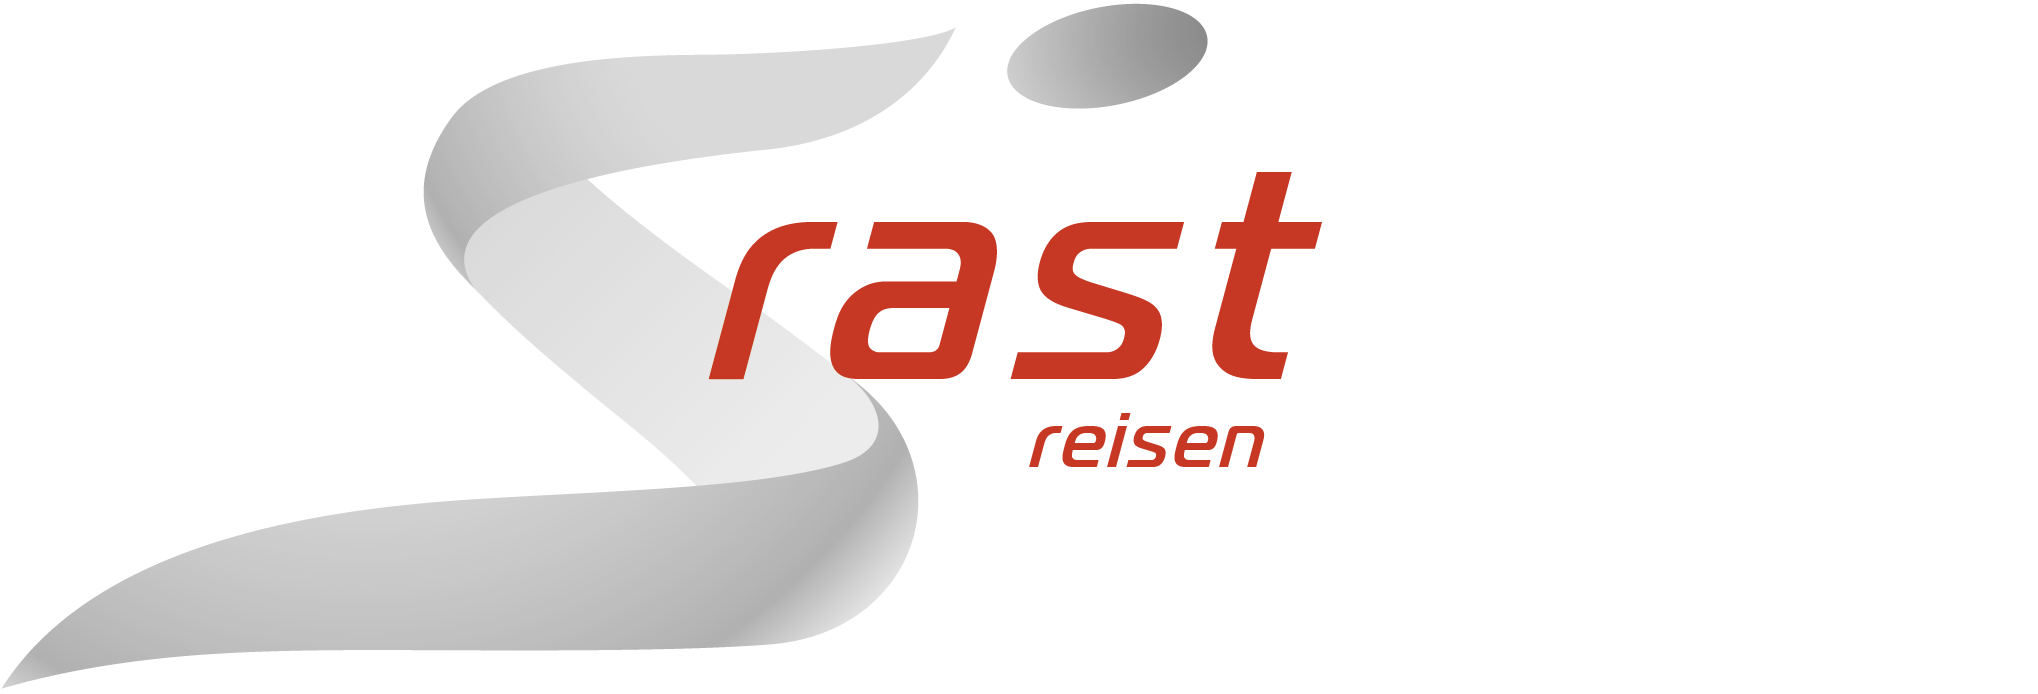 Rast Reisen - Logo